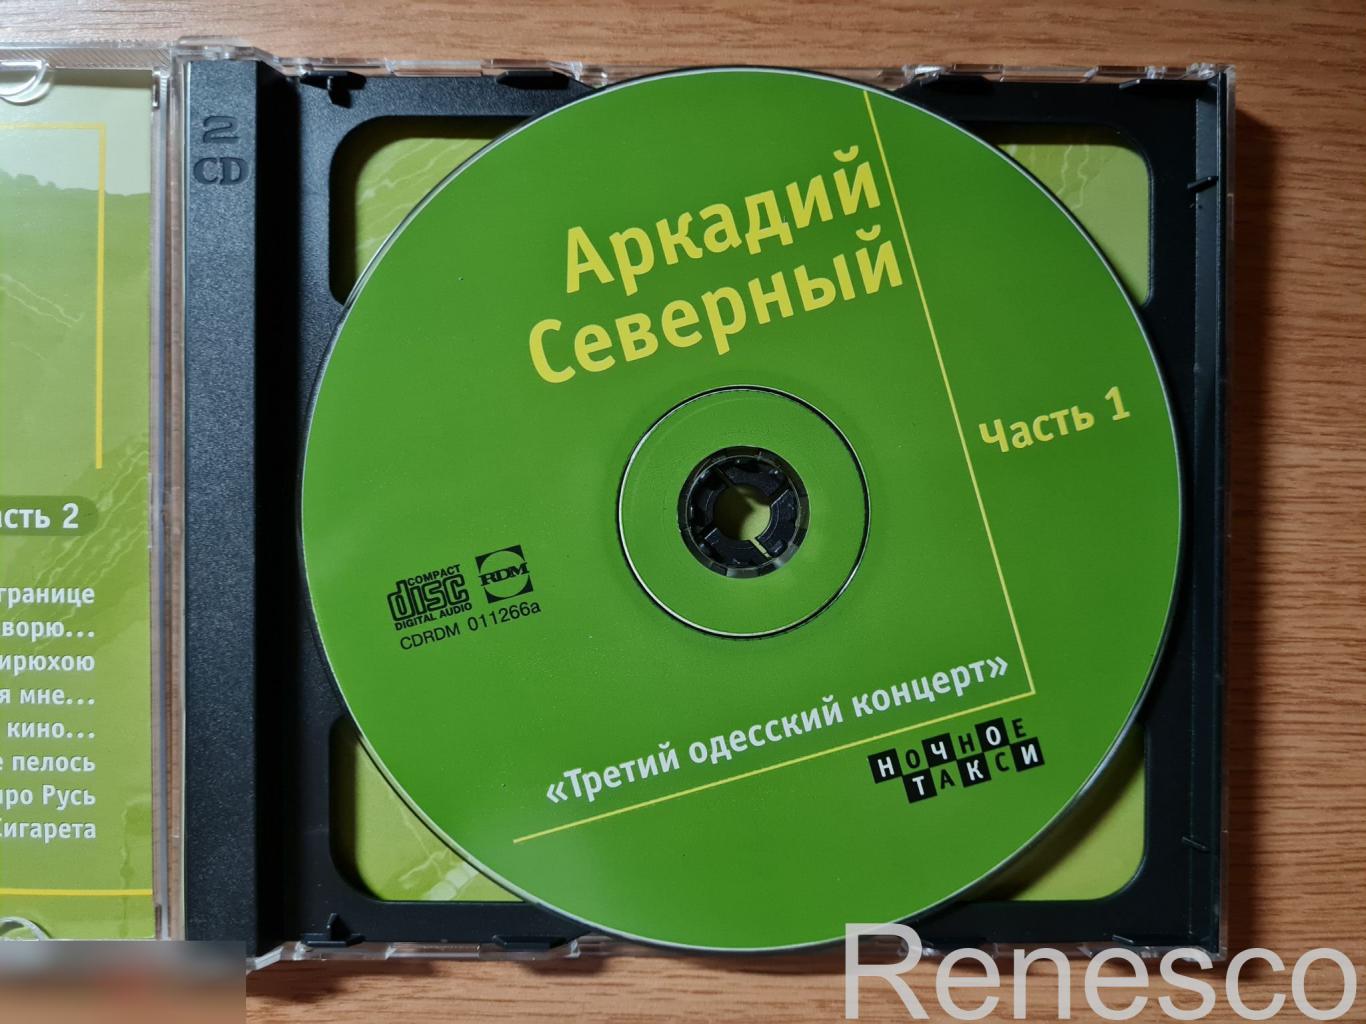 Аркадий Северный – Третий Одесский концерт (Russia) (2000) 4